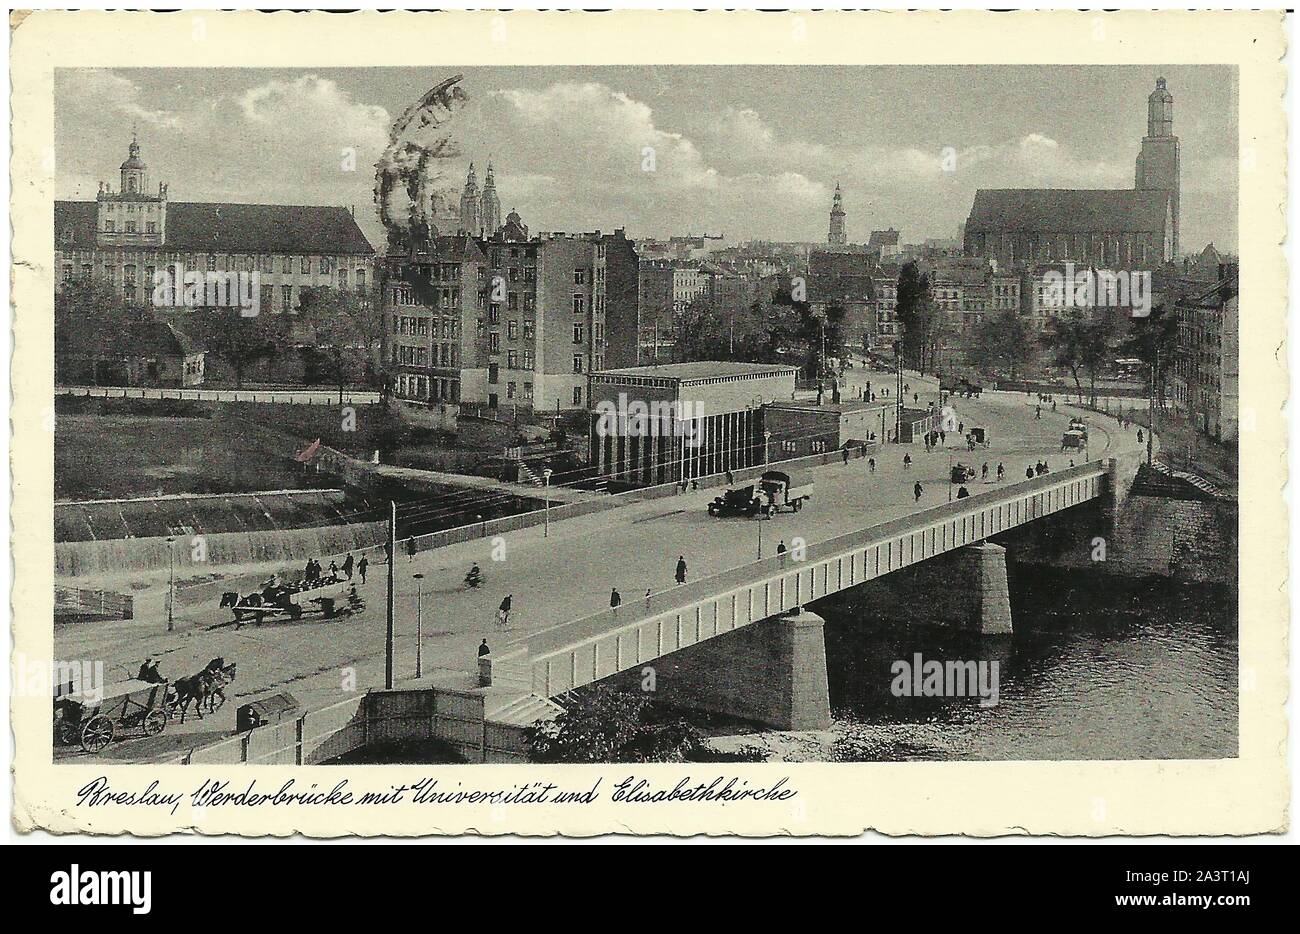 Breslau /Wroclaw/ carte postale d'1920s/30s Banque D'Images